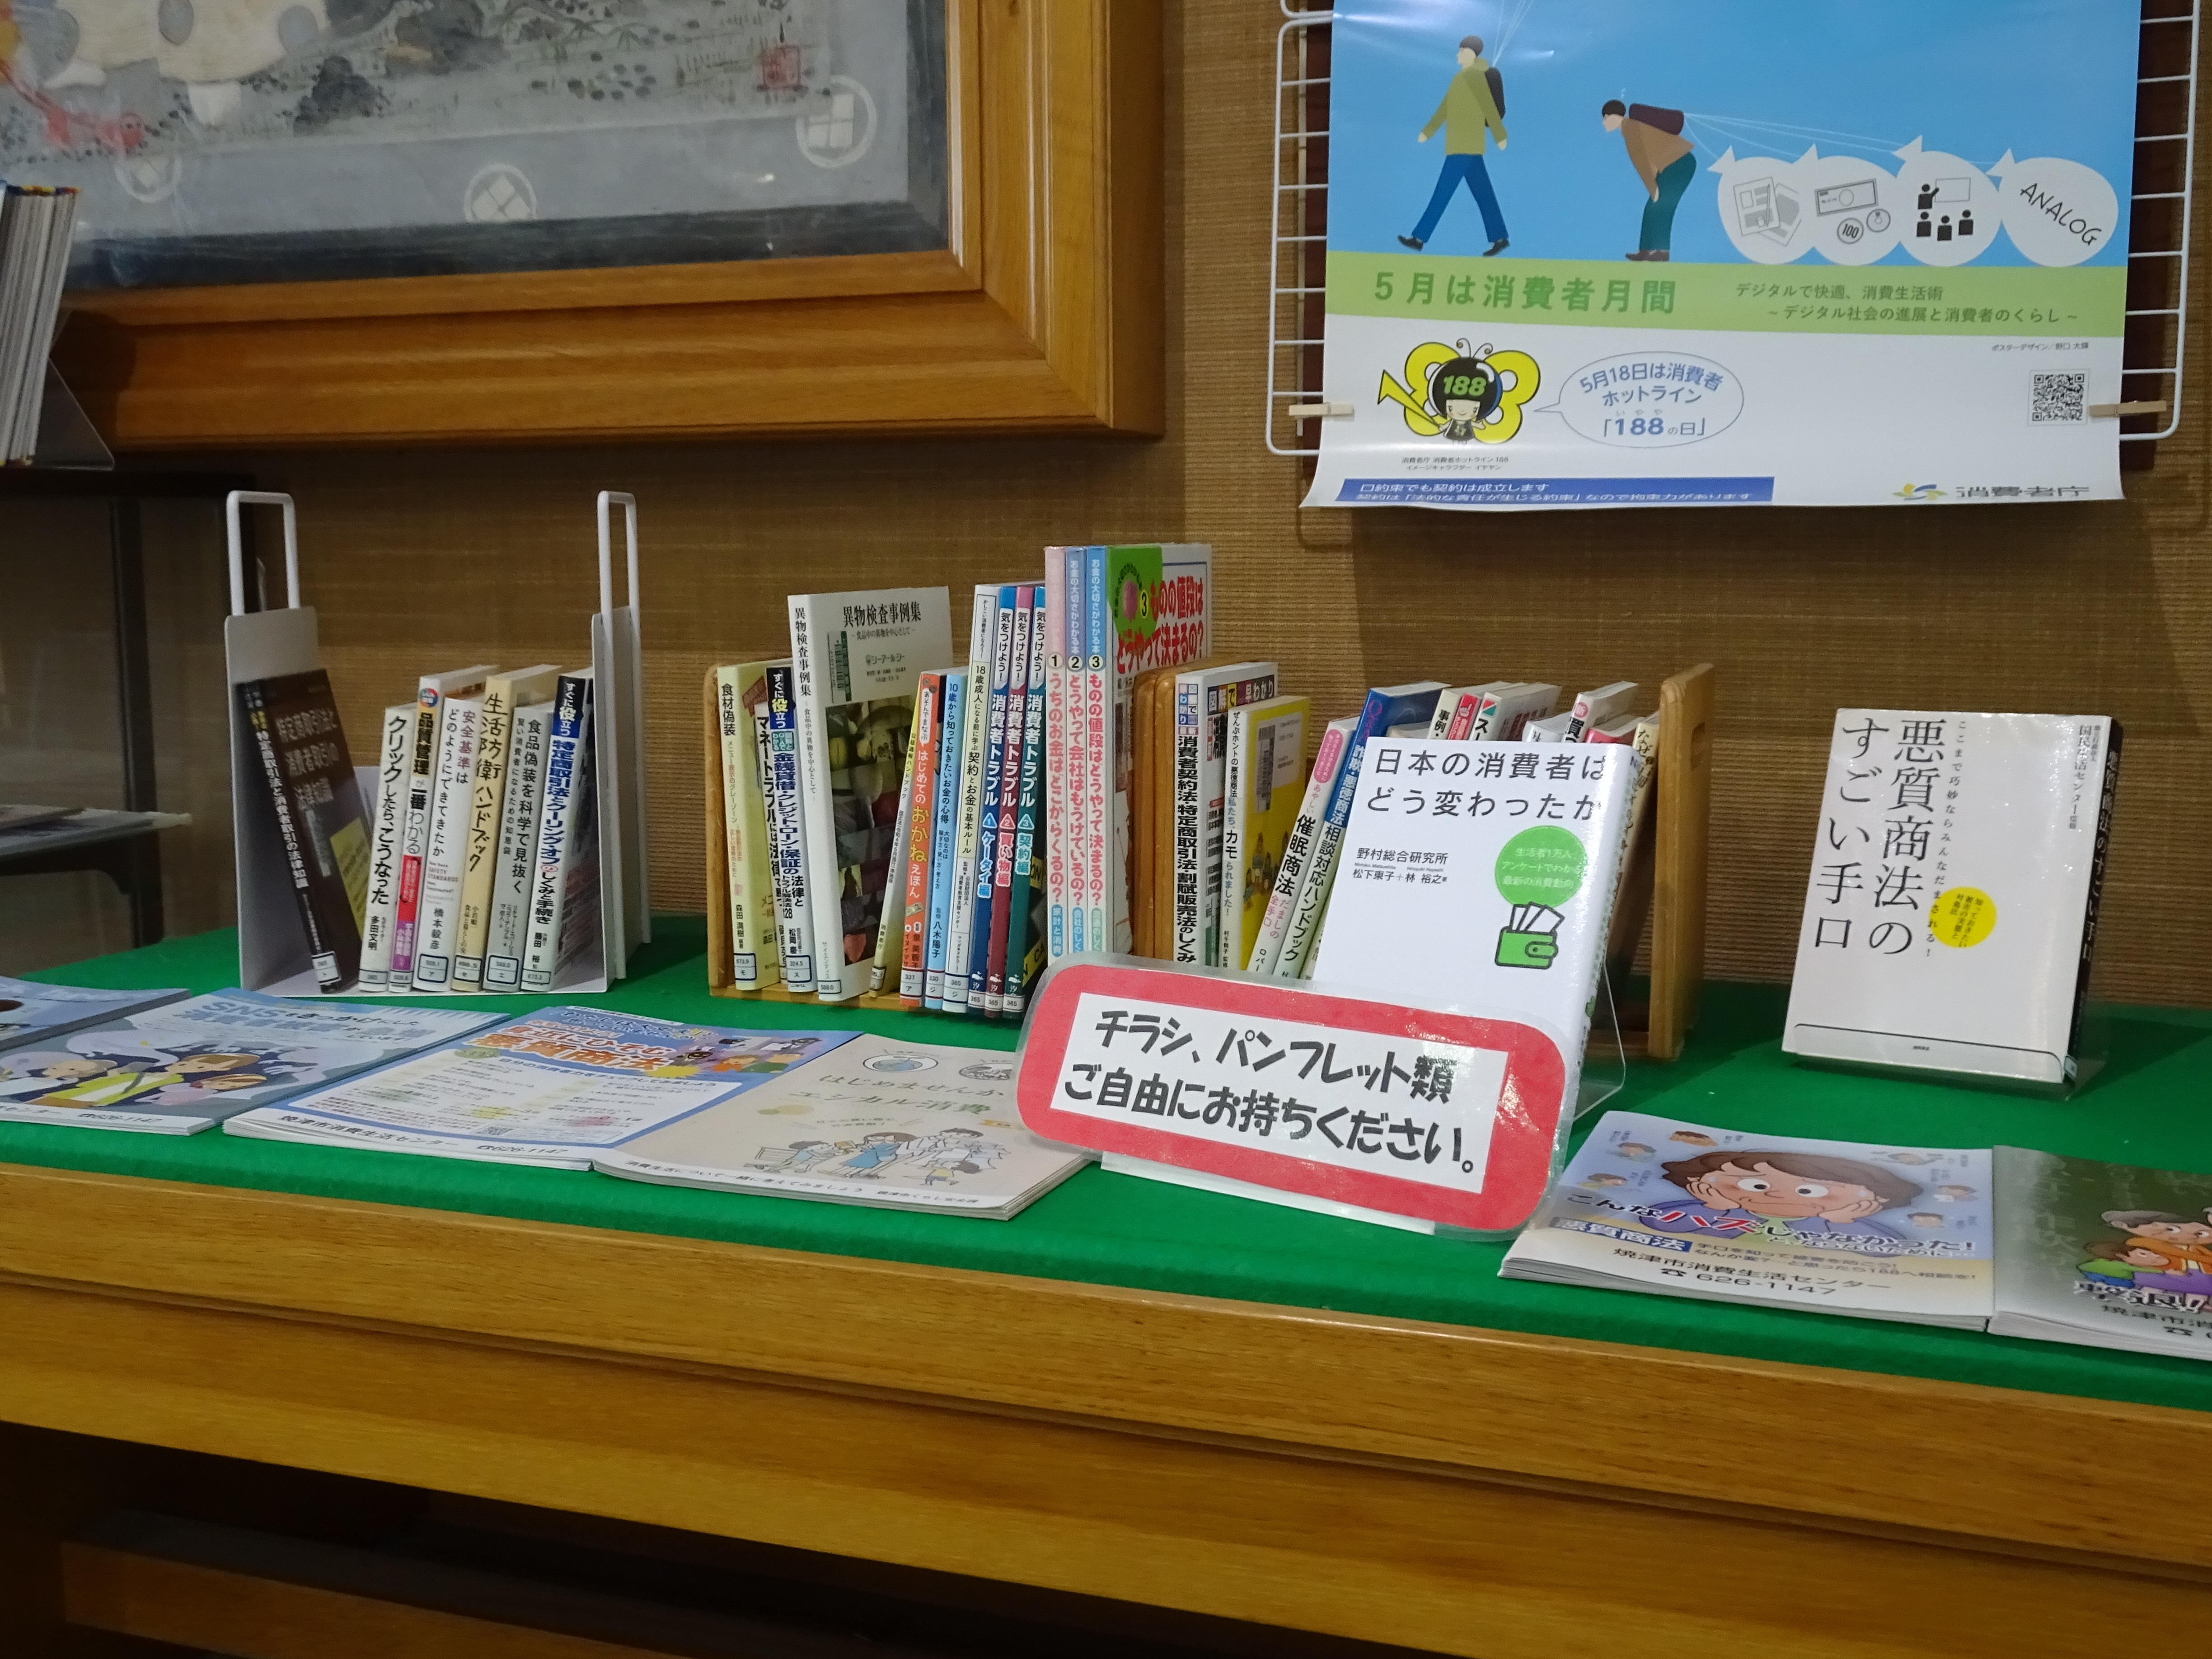 大井川図書館での展示の様子2